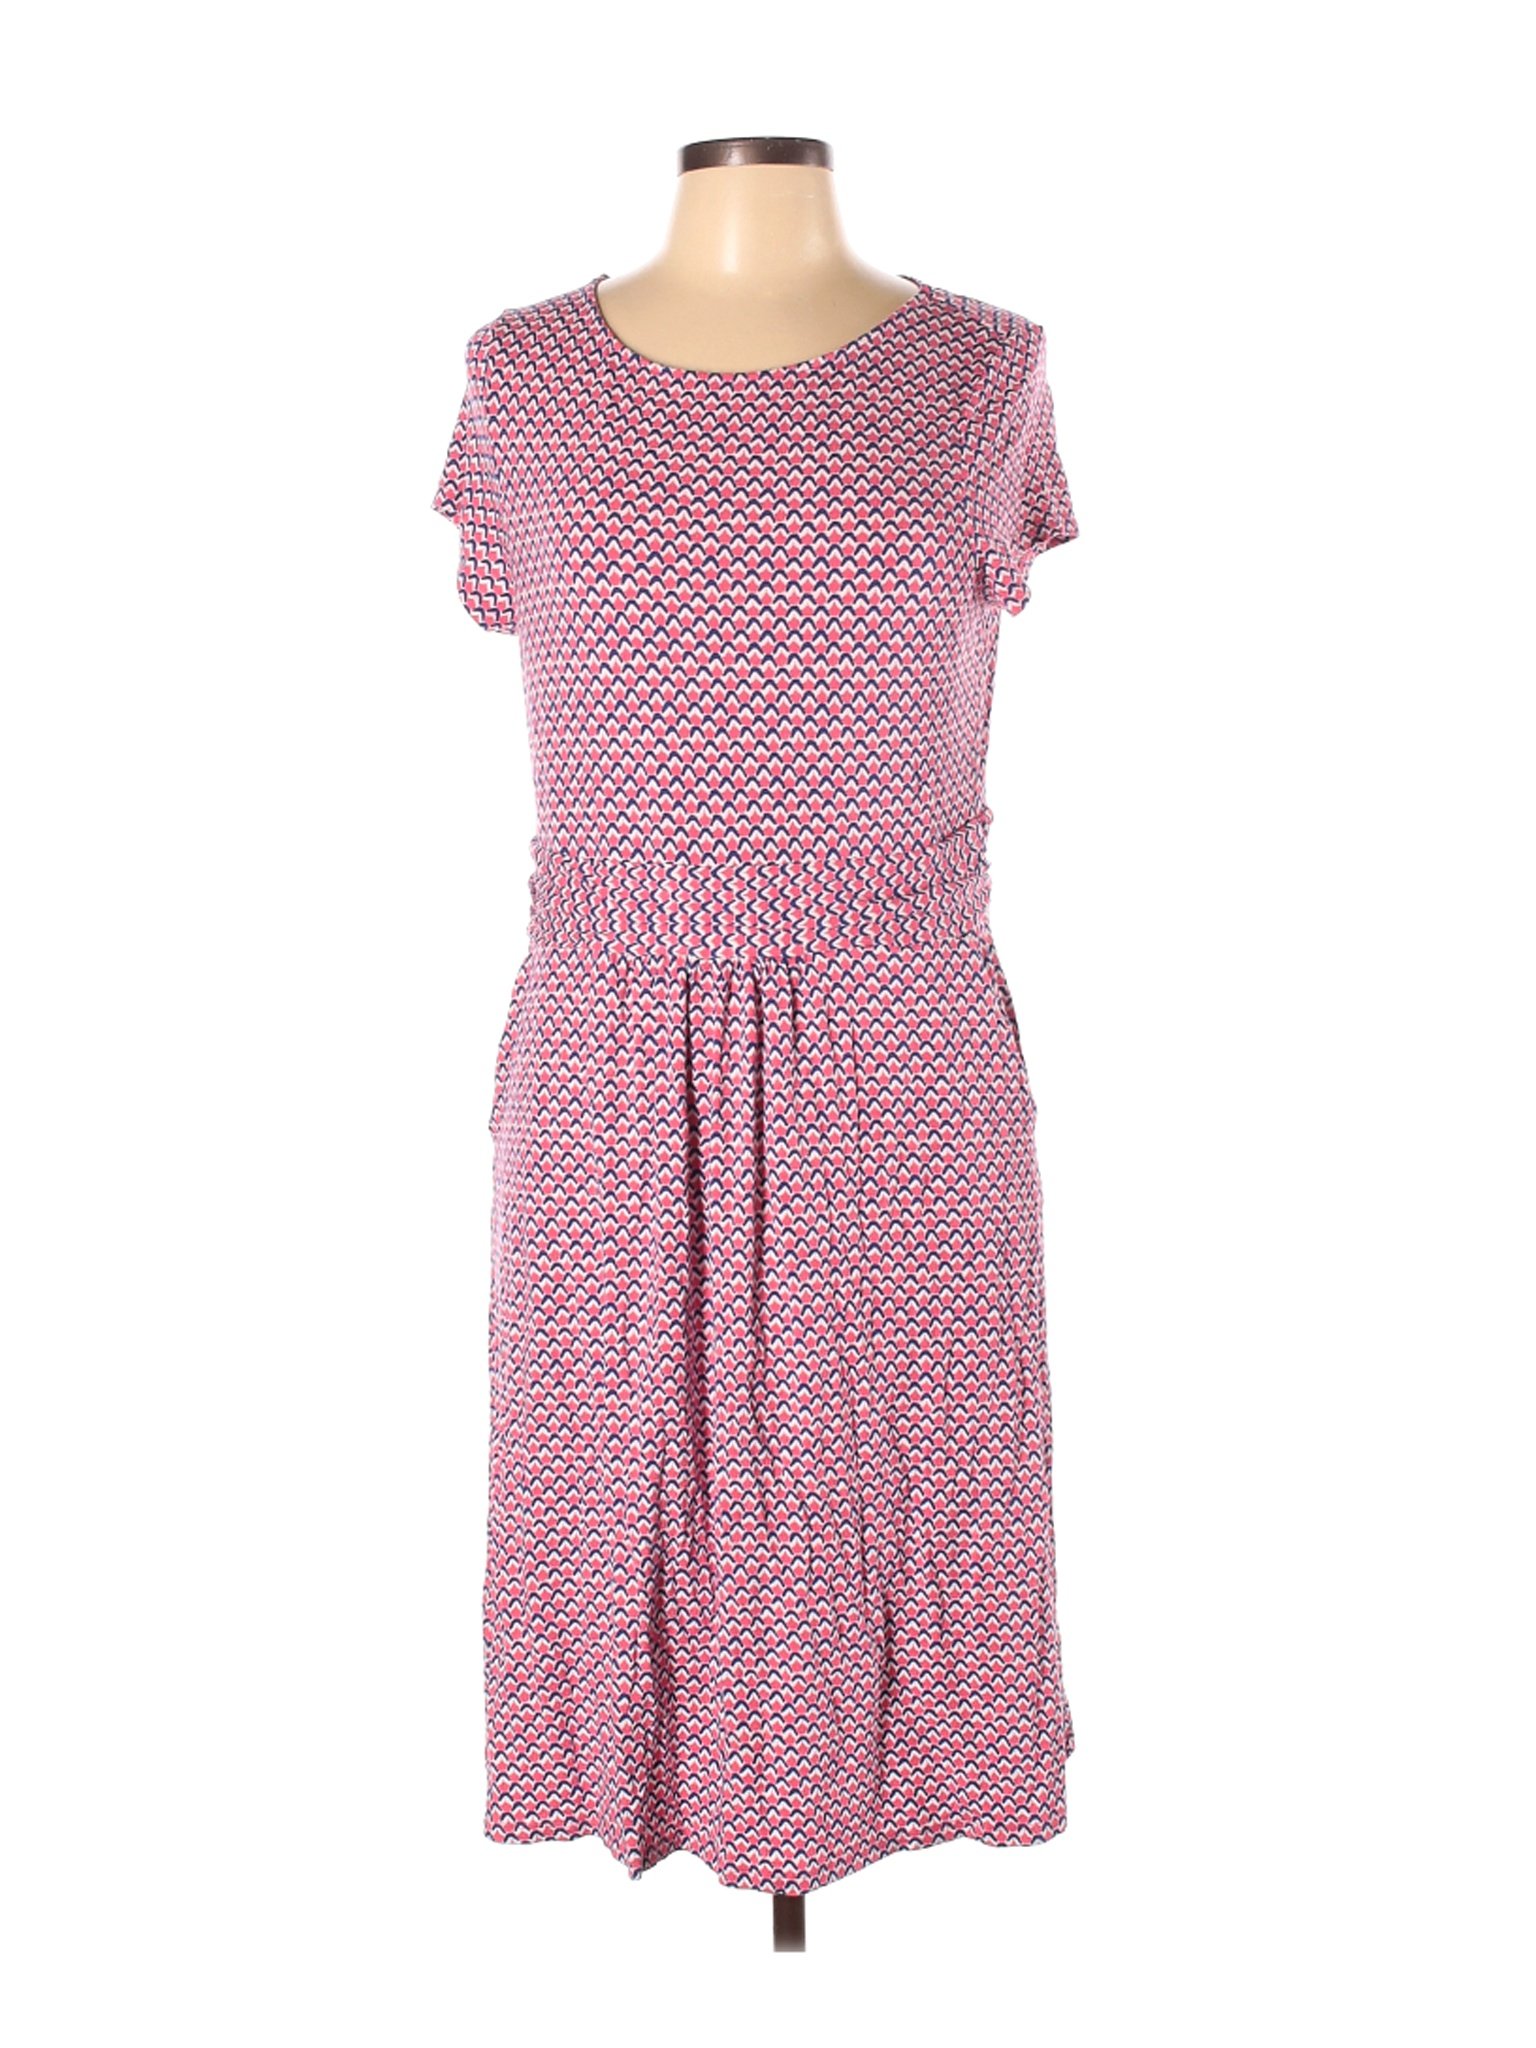 Boden Women Pink Casual Dress 12 | eBay